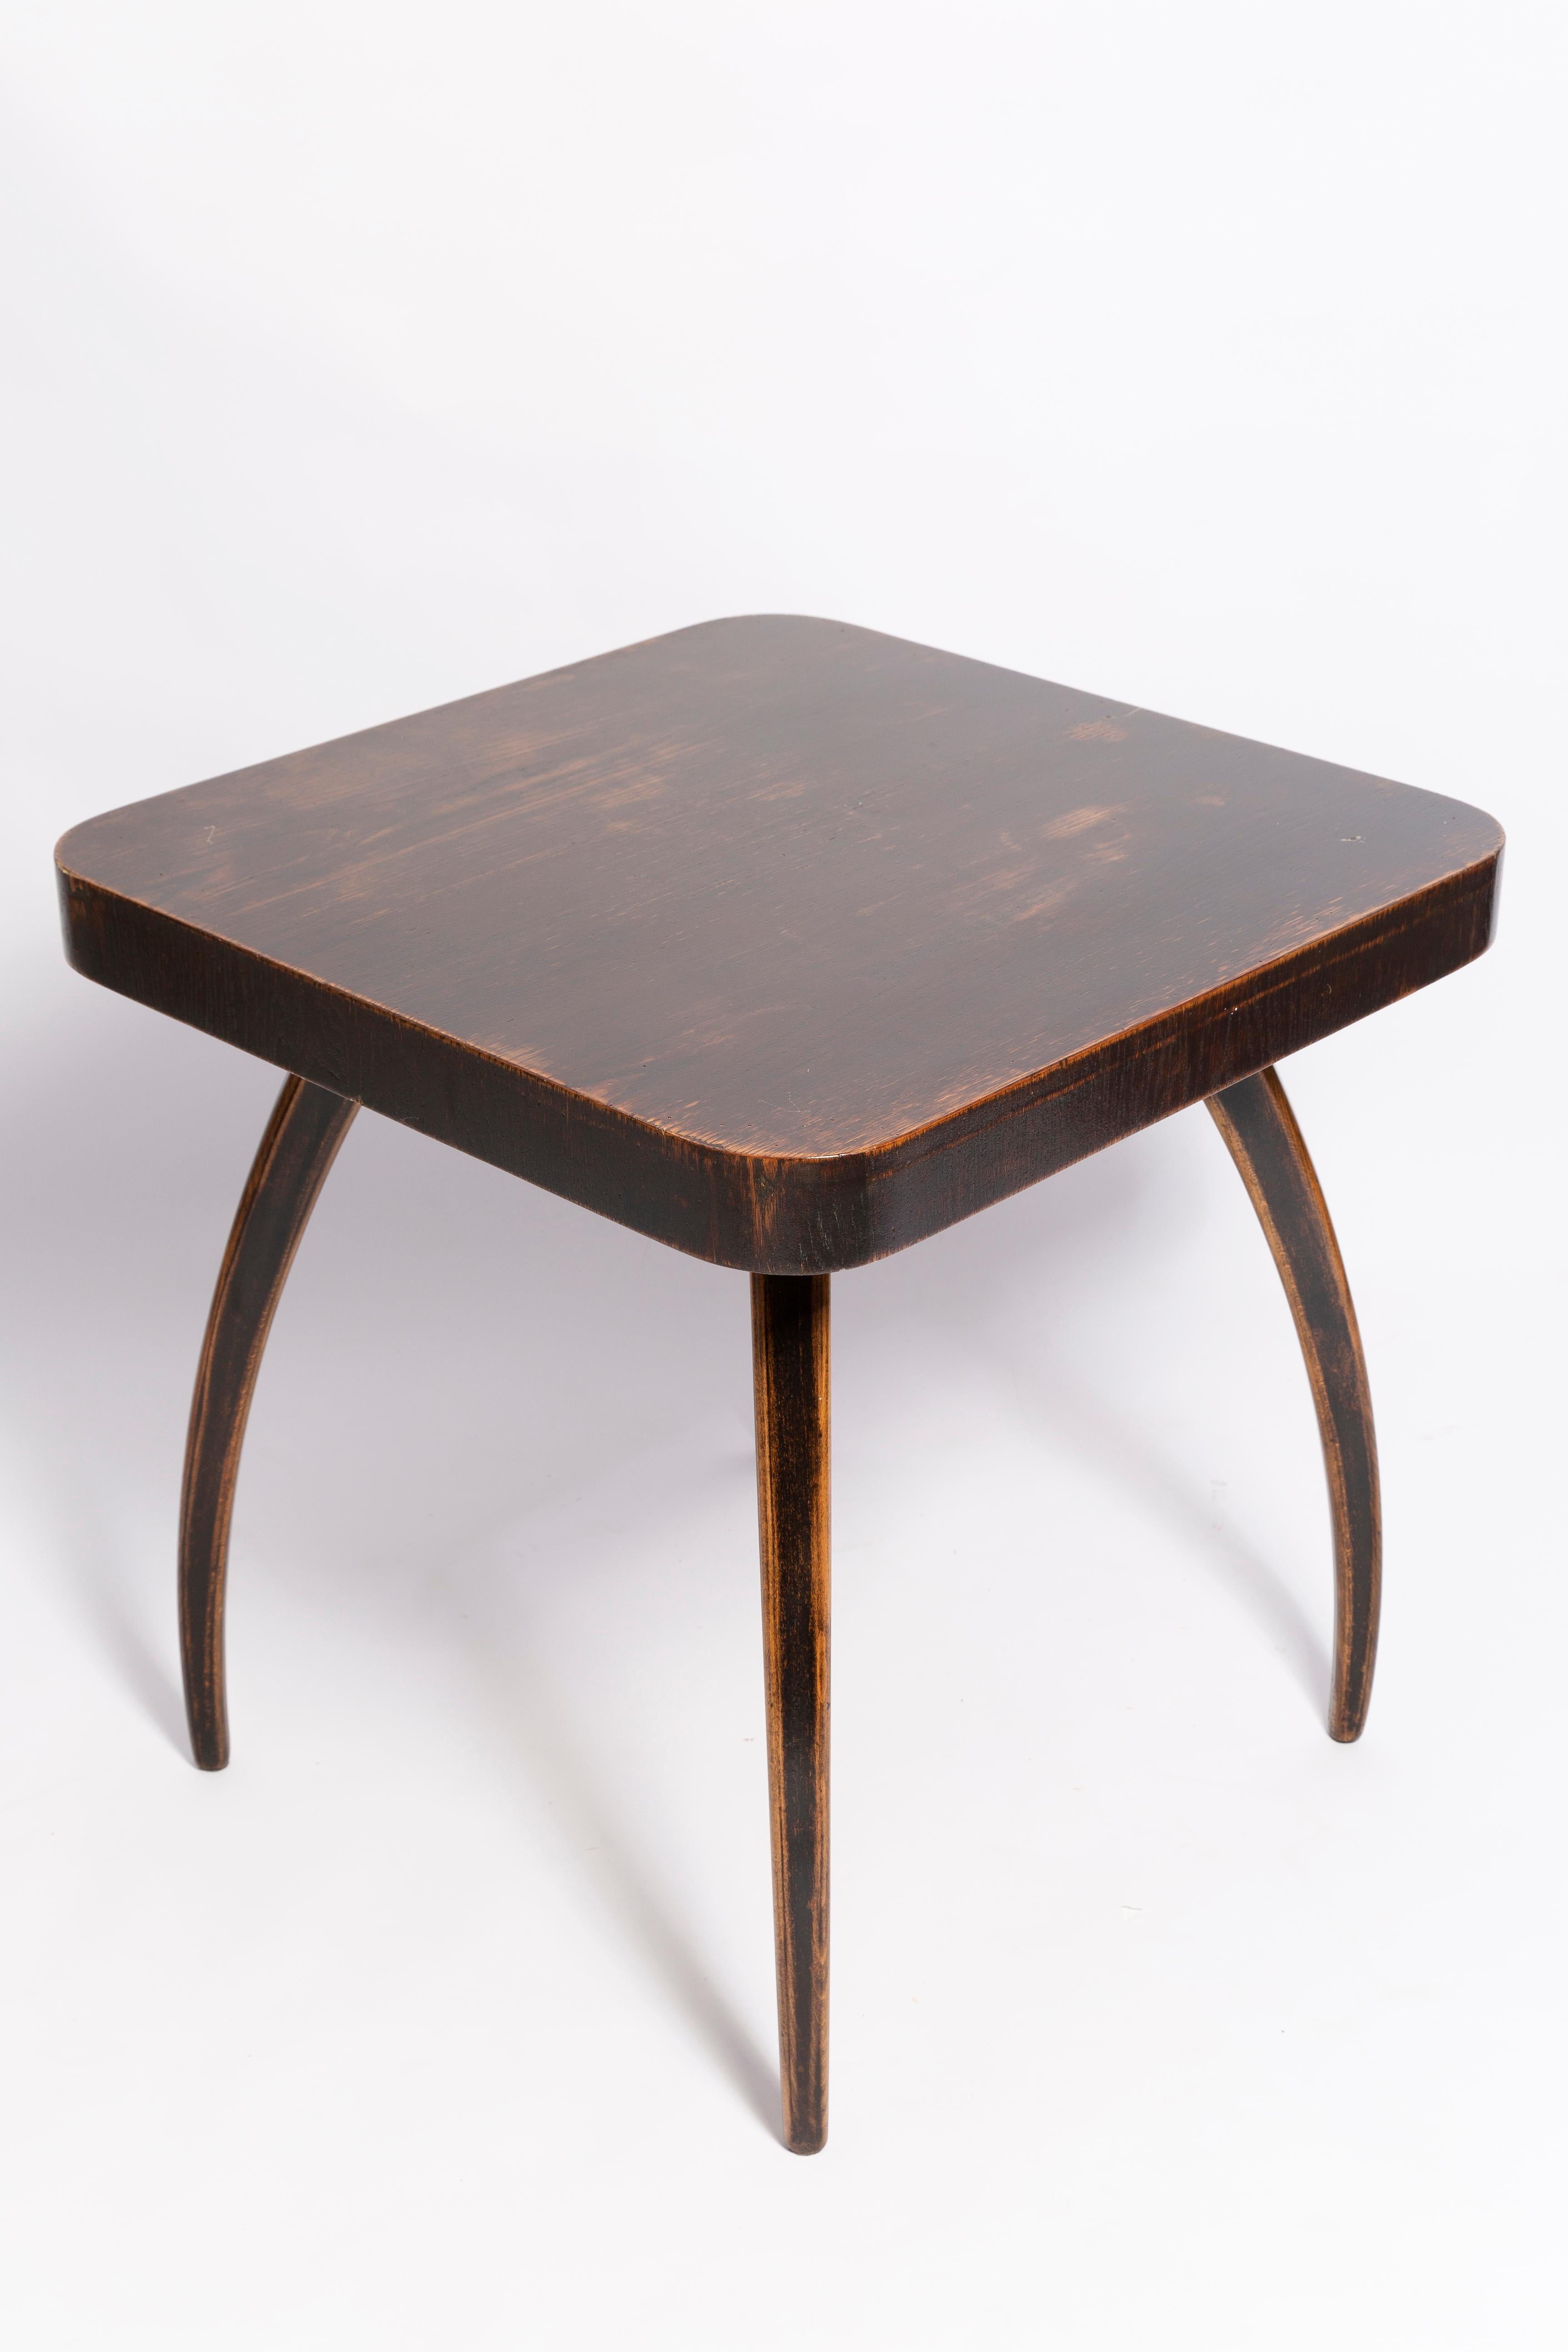 Table basse Art déco conçue en 1960 par Jindrich Halabala. La table est entièrement restaurée. Nous avons utilisé du placage de noyer semi-mat. Il a été fabriqué en République tchèque. Une seule pièce unique disponible.

A propos du designer